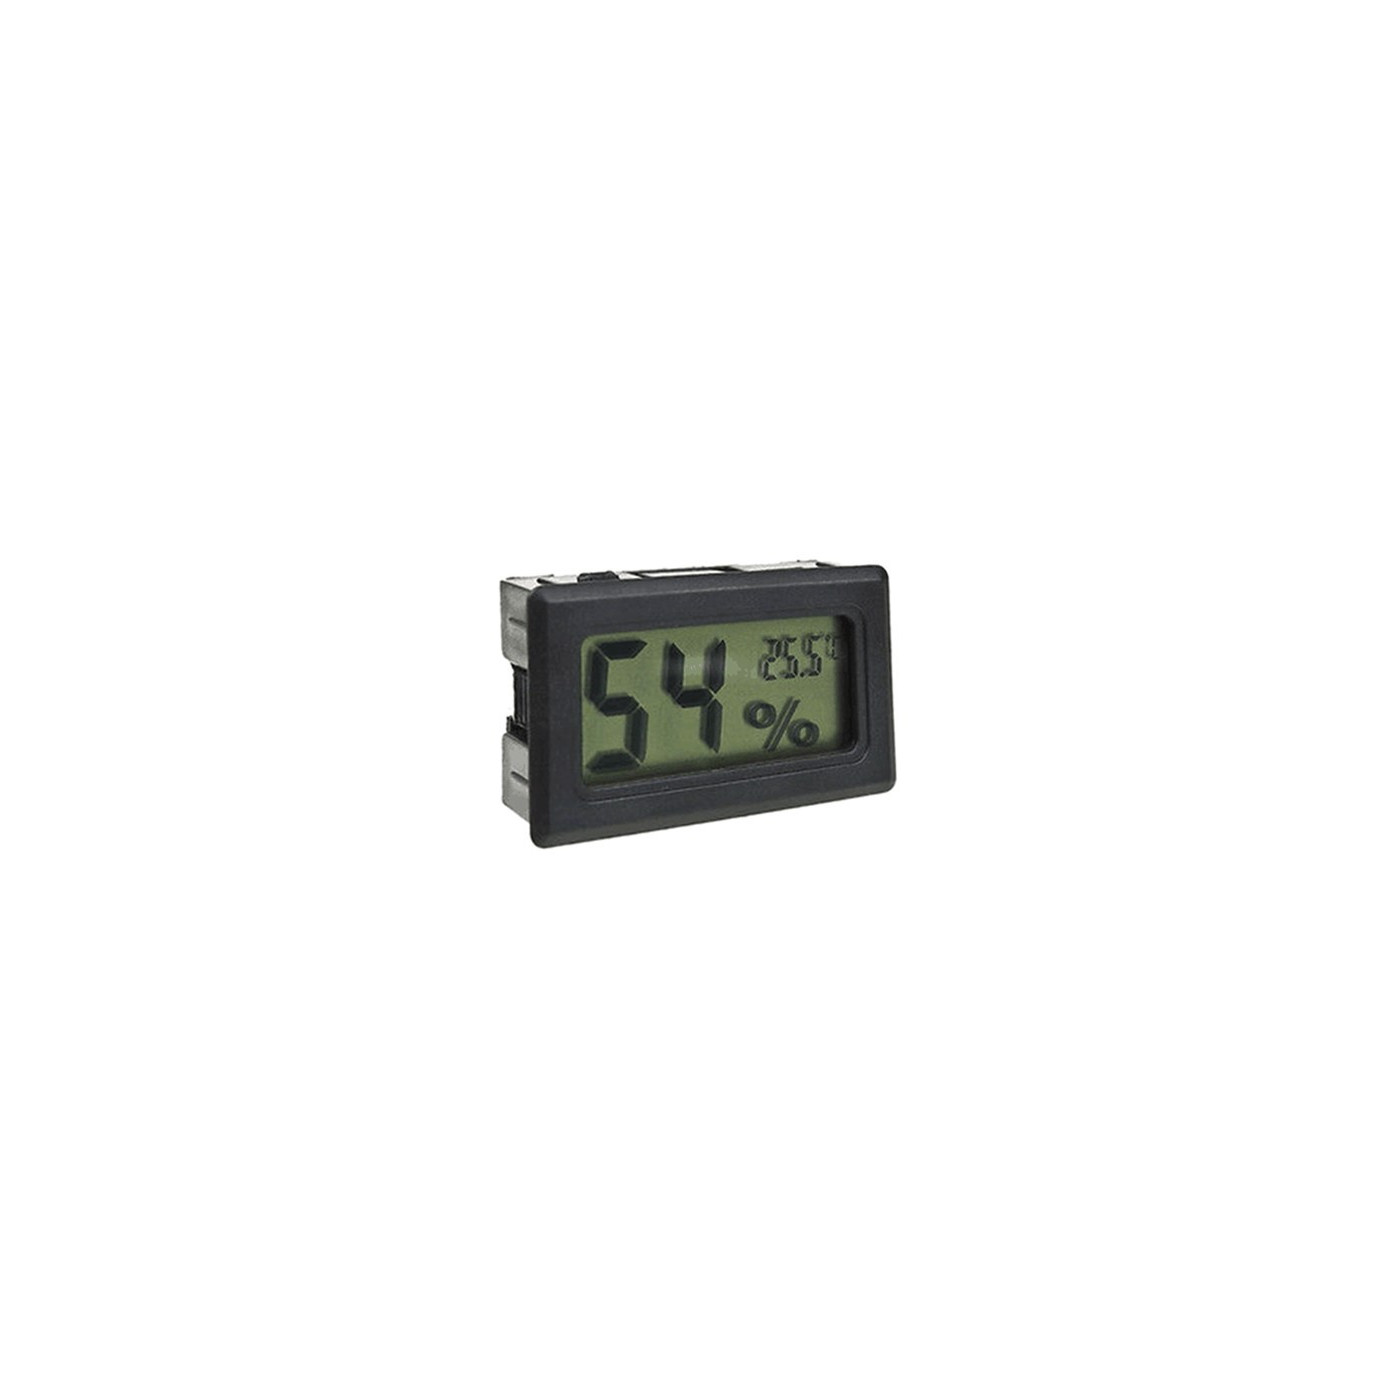 LCD temperatura interna e misuratore di umidità (nero)